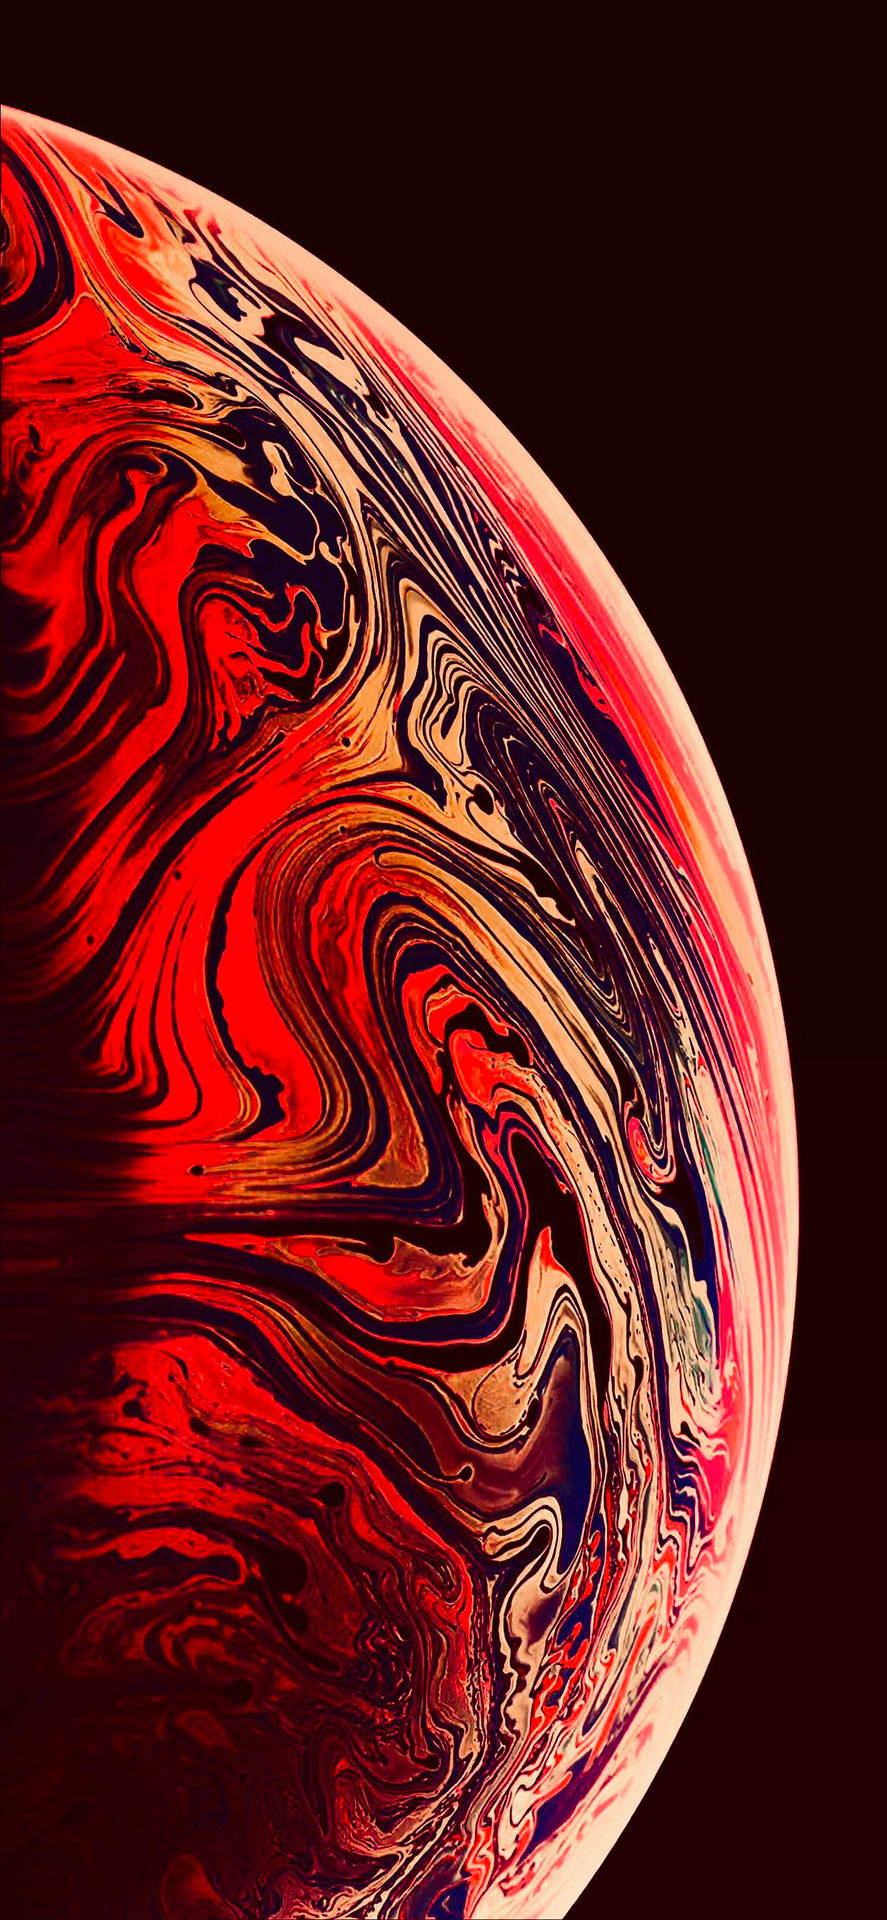 Ren Rød Planet Wallpaper